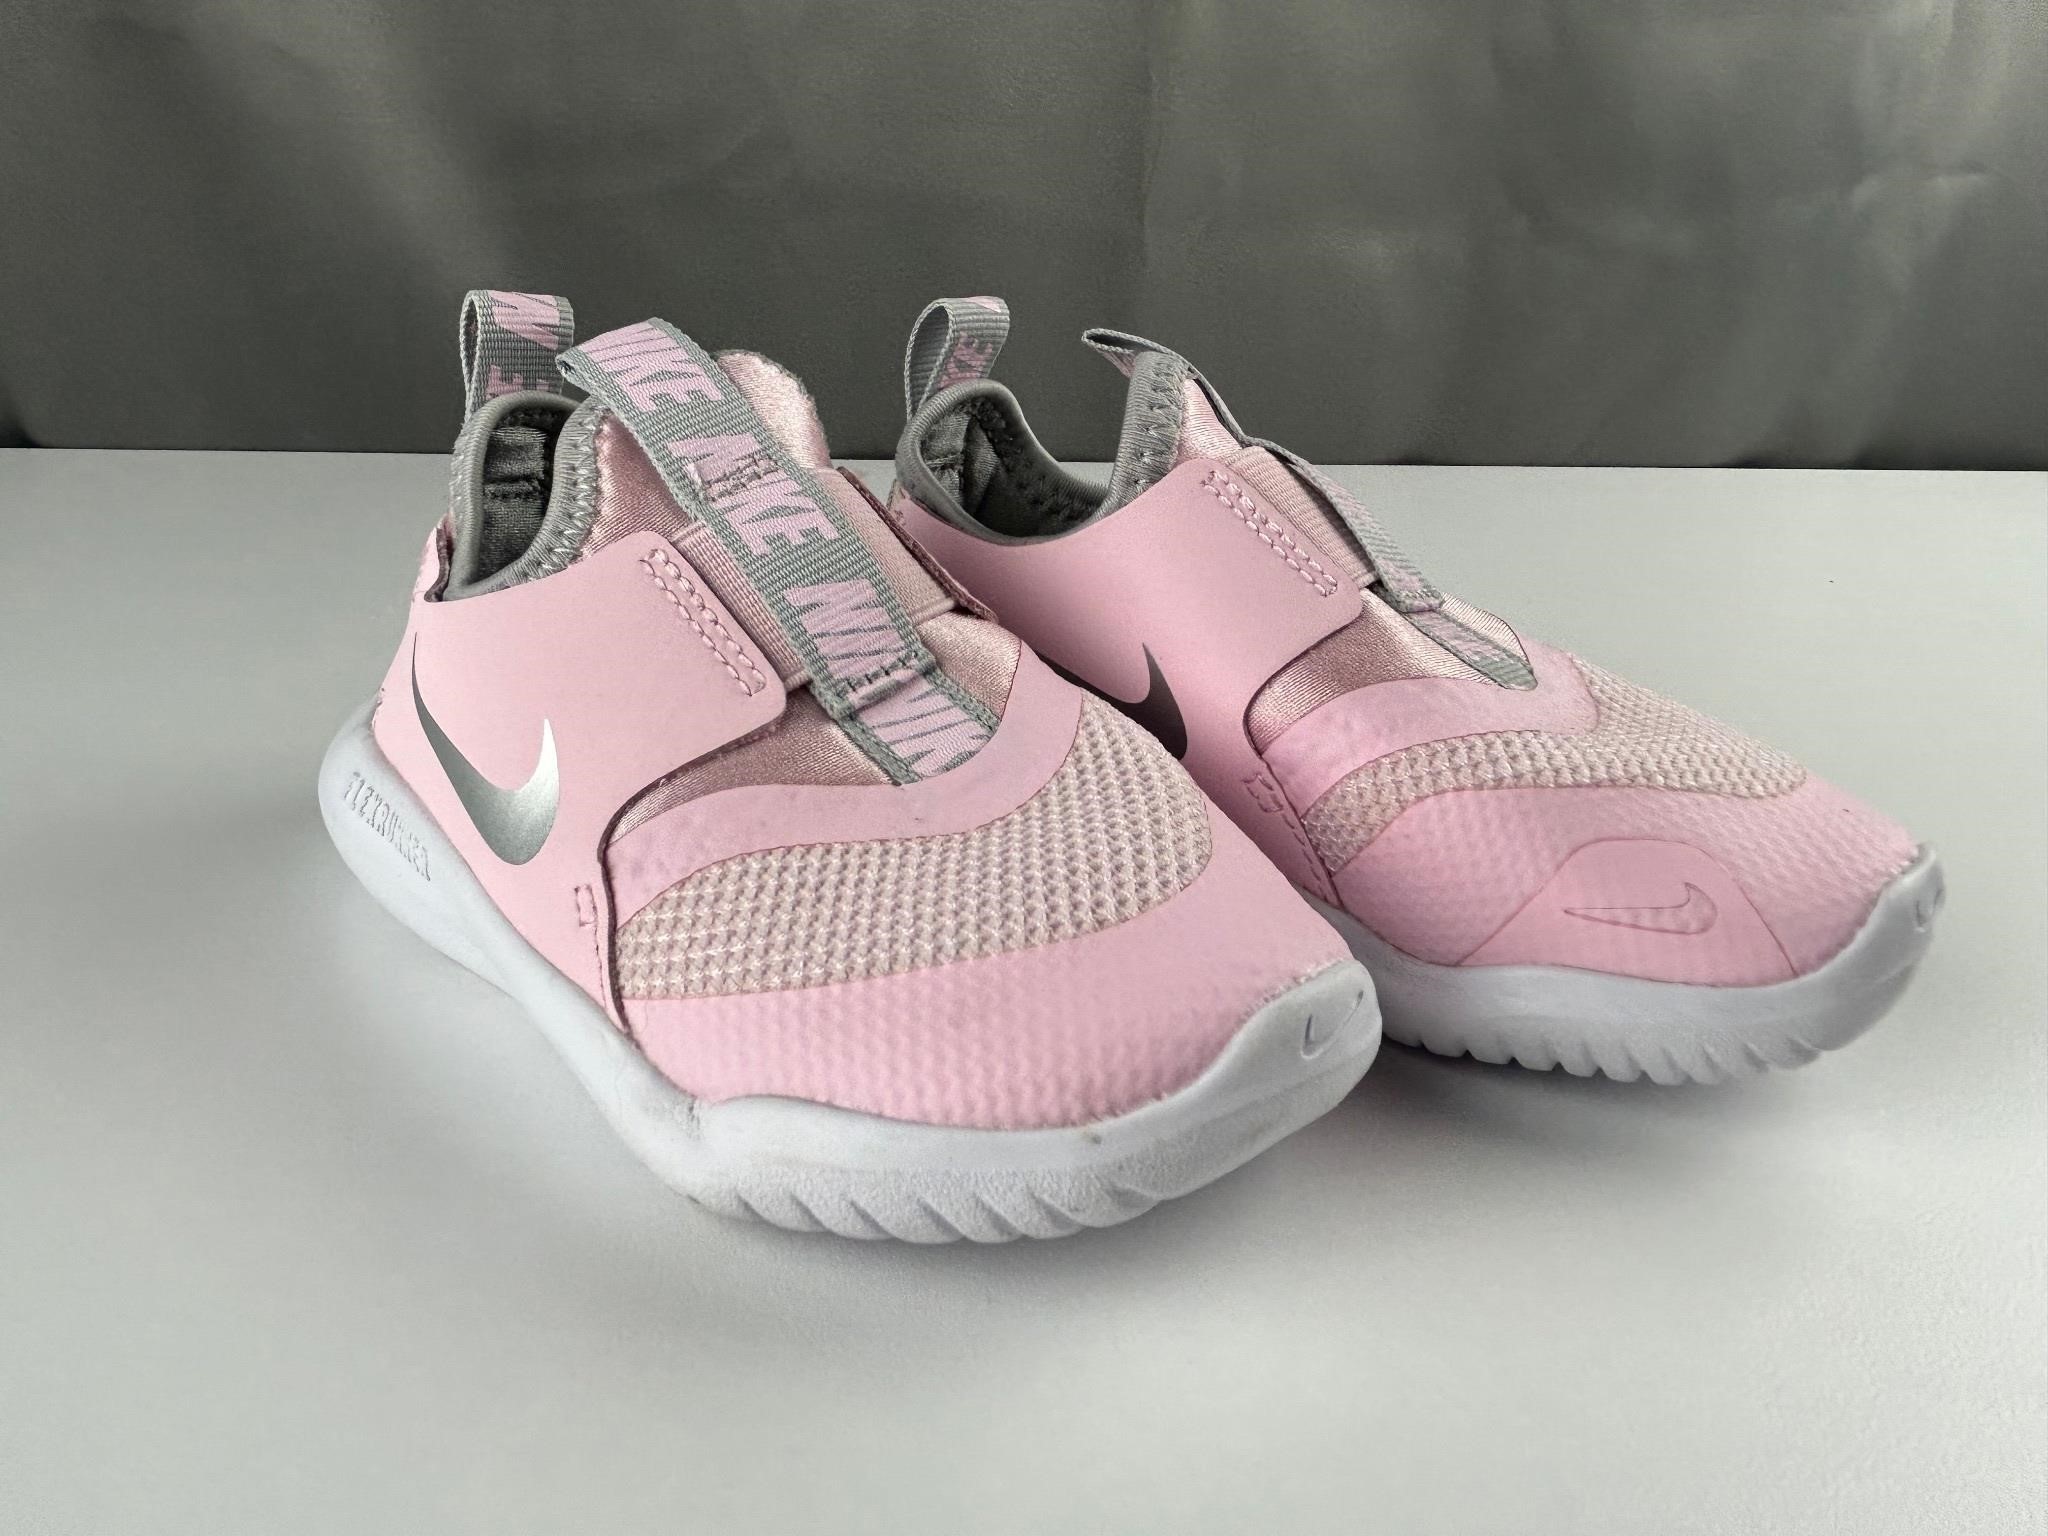 Cute little pink Nike’s